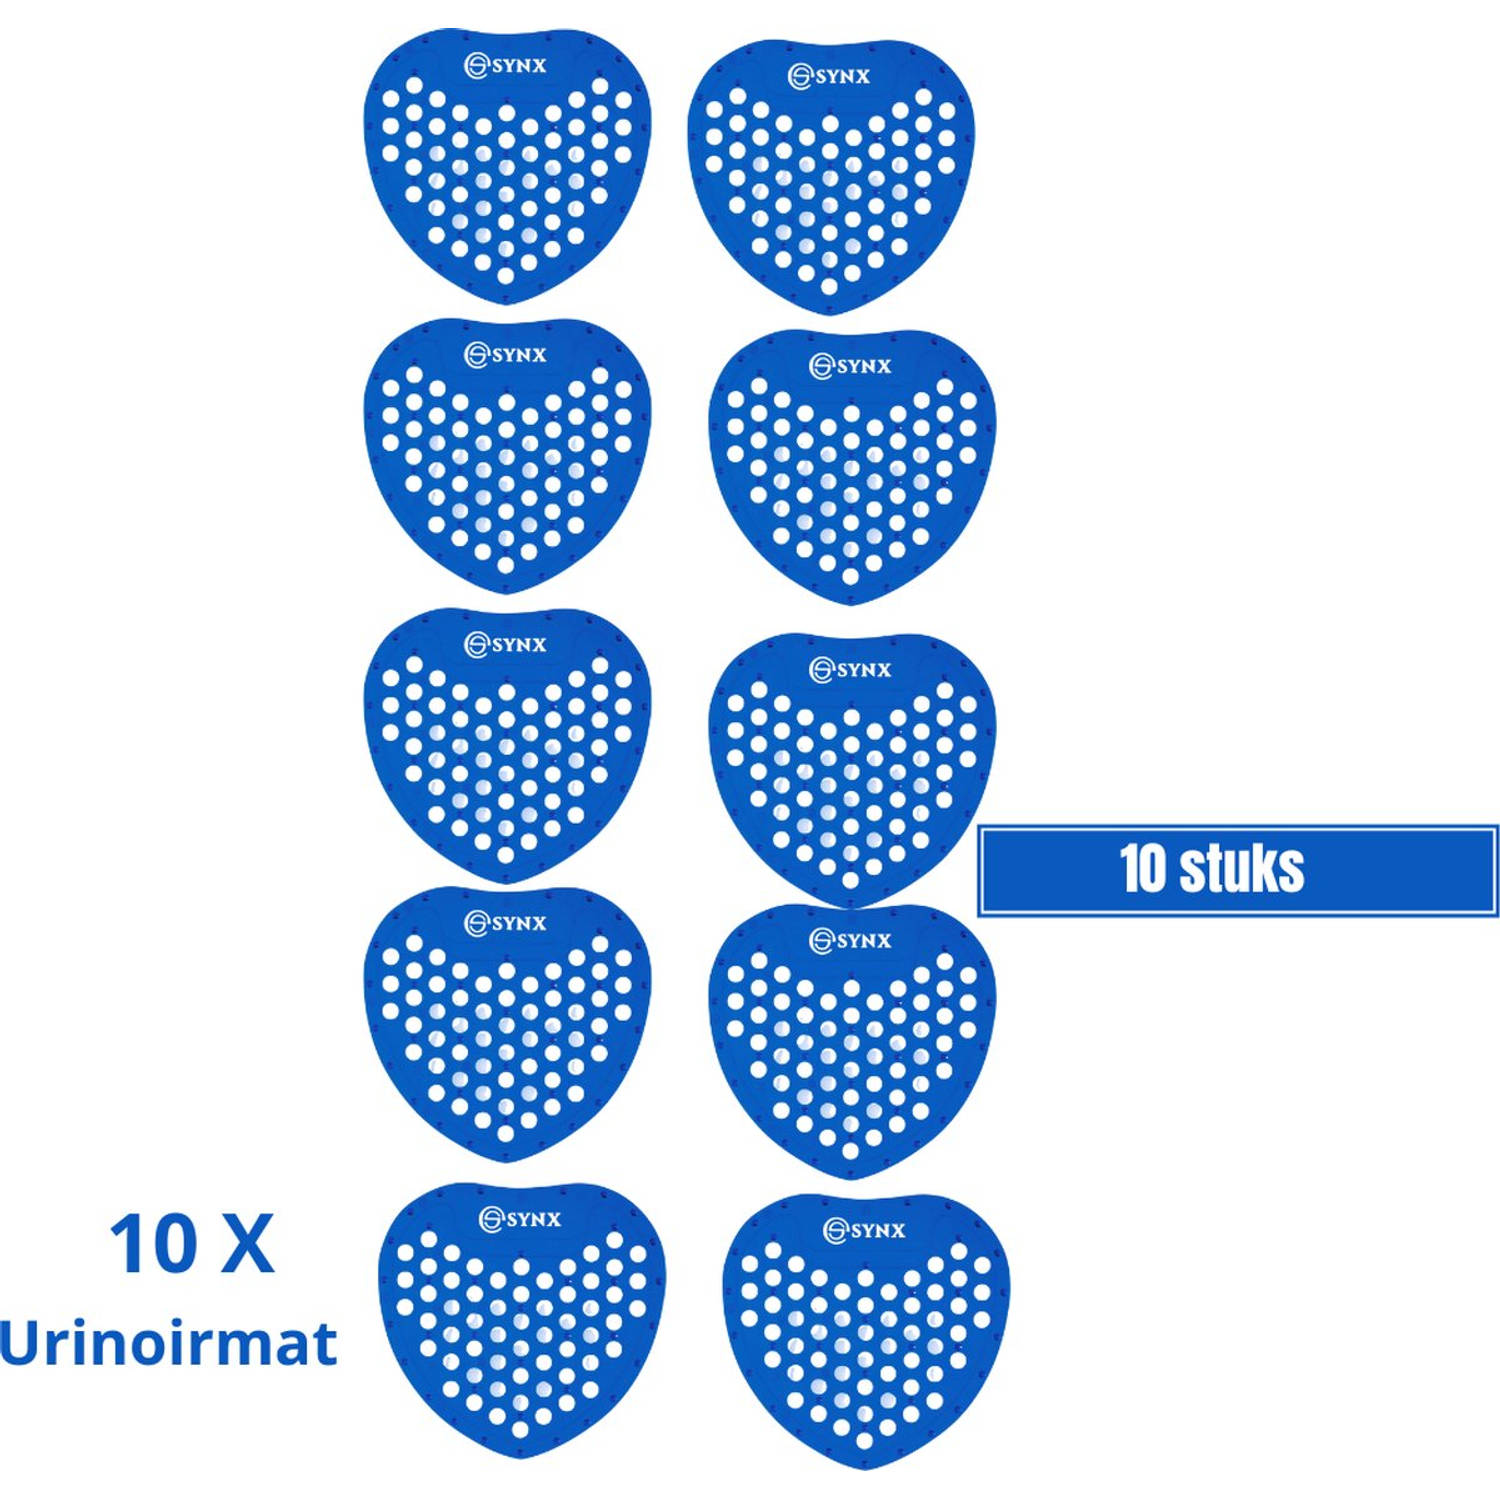 Synx Tools Urinoirmatje met frisse Geur Urinoirmatten 10 stuks voordeelverpakking Anti spat mat WC T